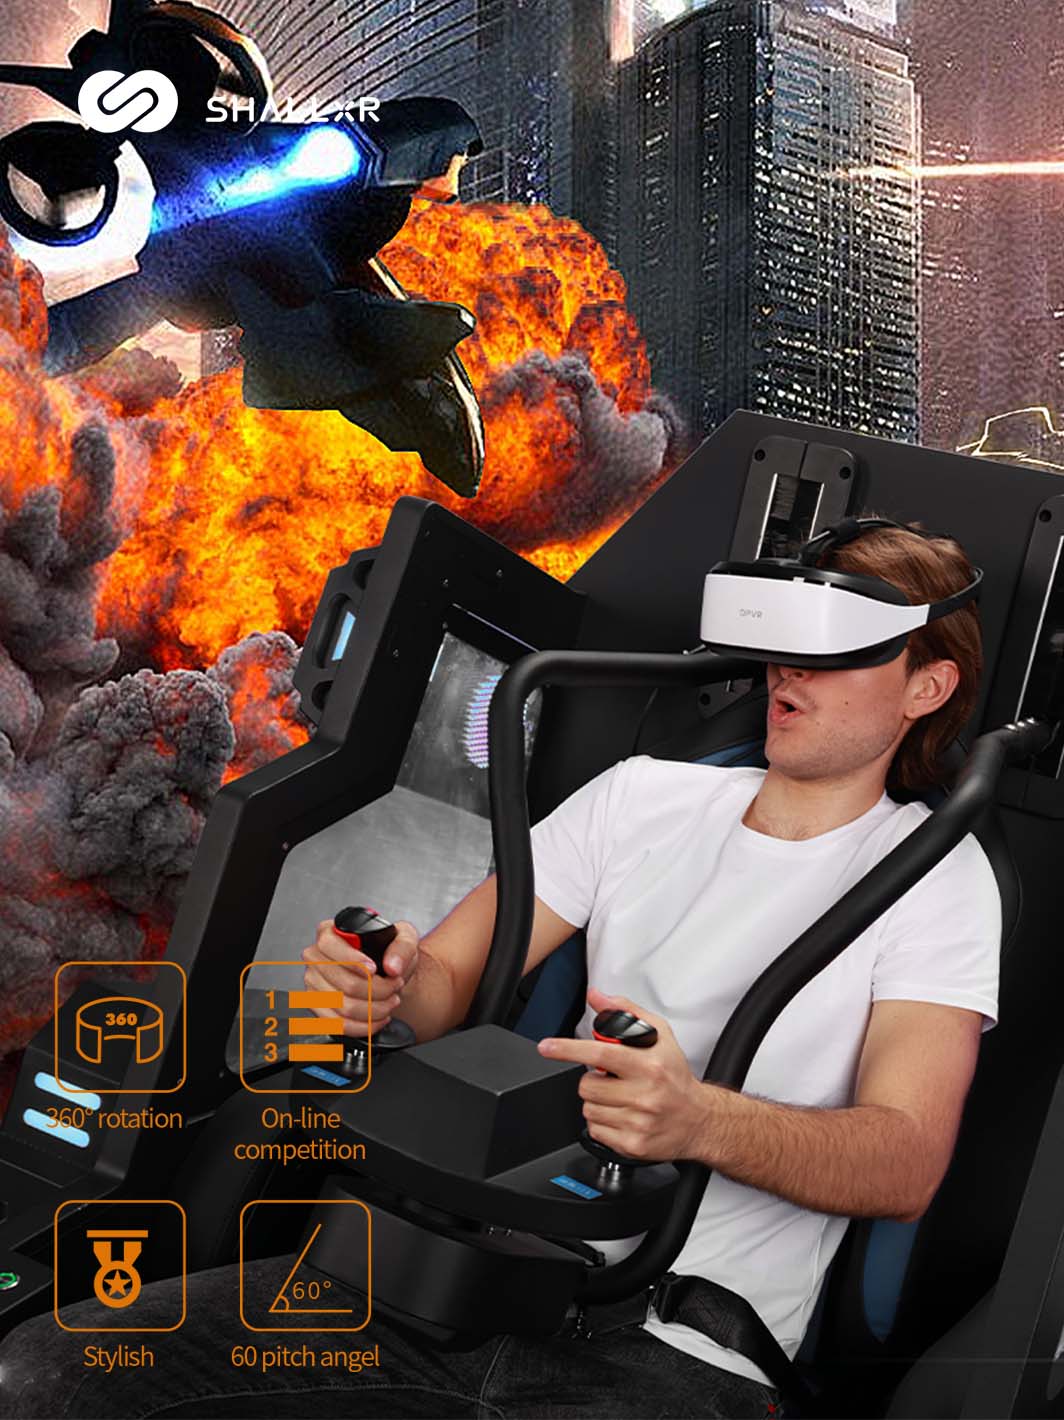 VR 360 rotation shooting simulator - ShallxR